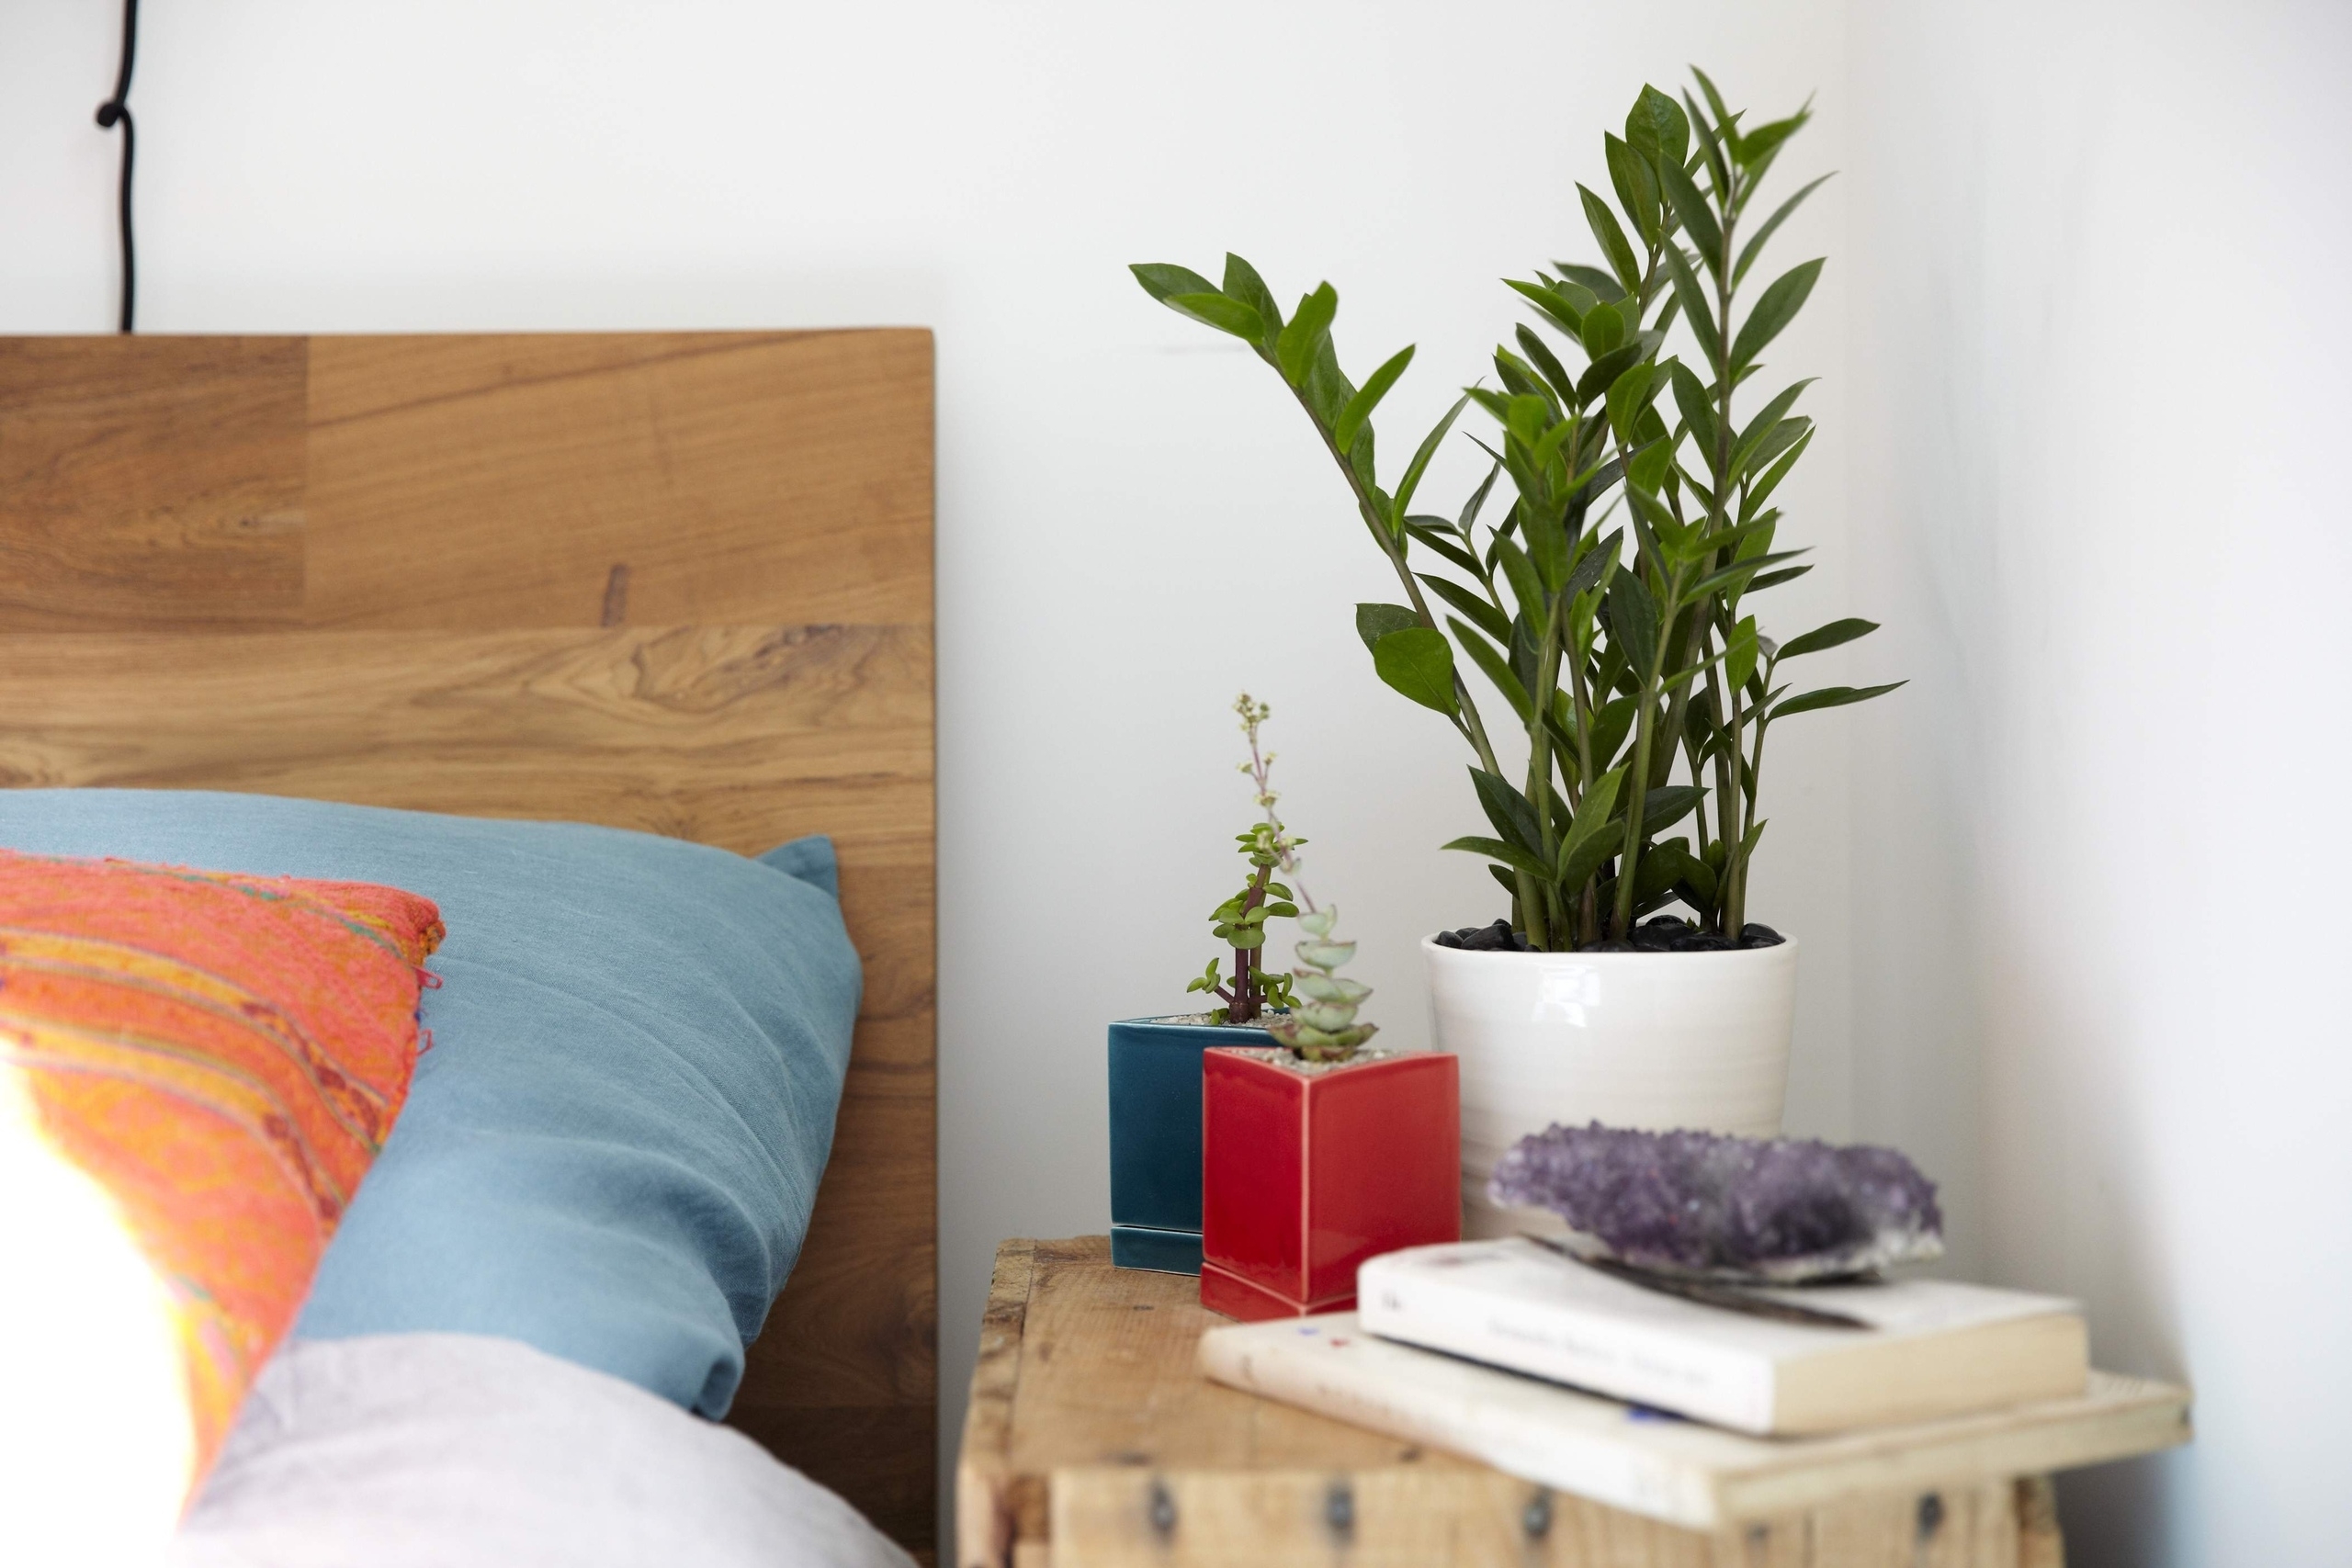 Лучшие комнатные растения для дома, благоприятные для дома и семьи